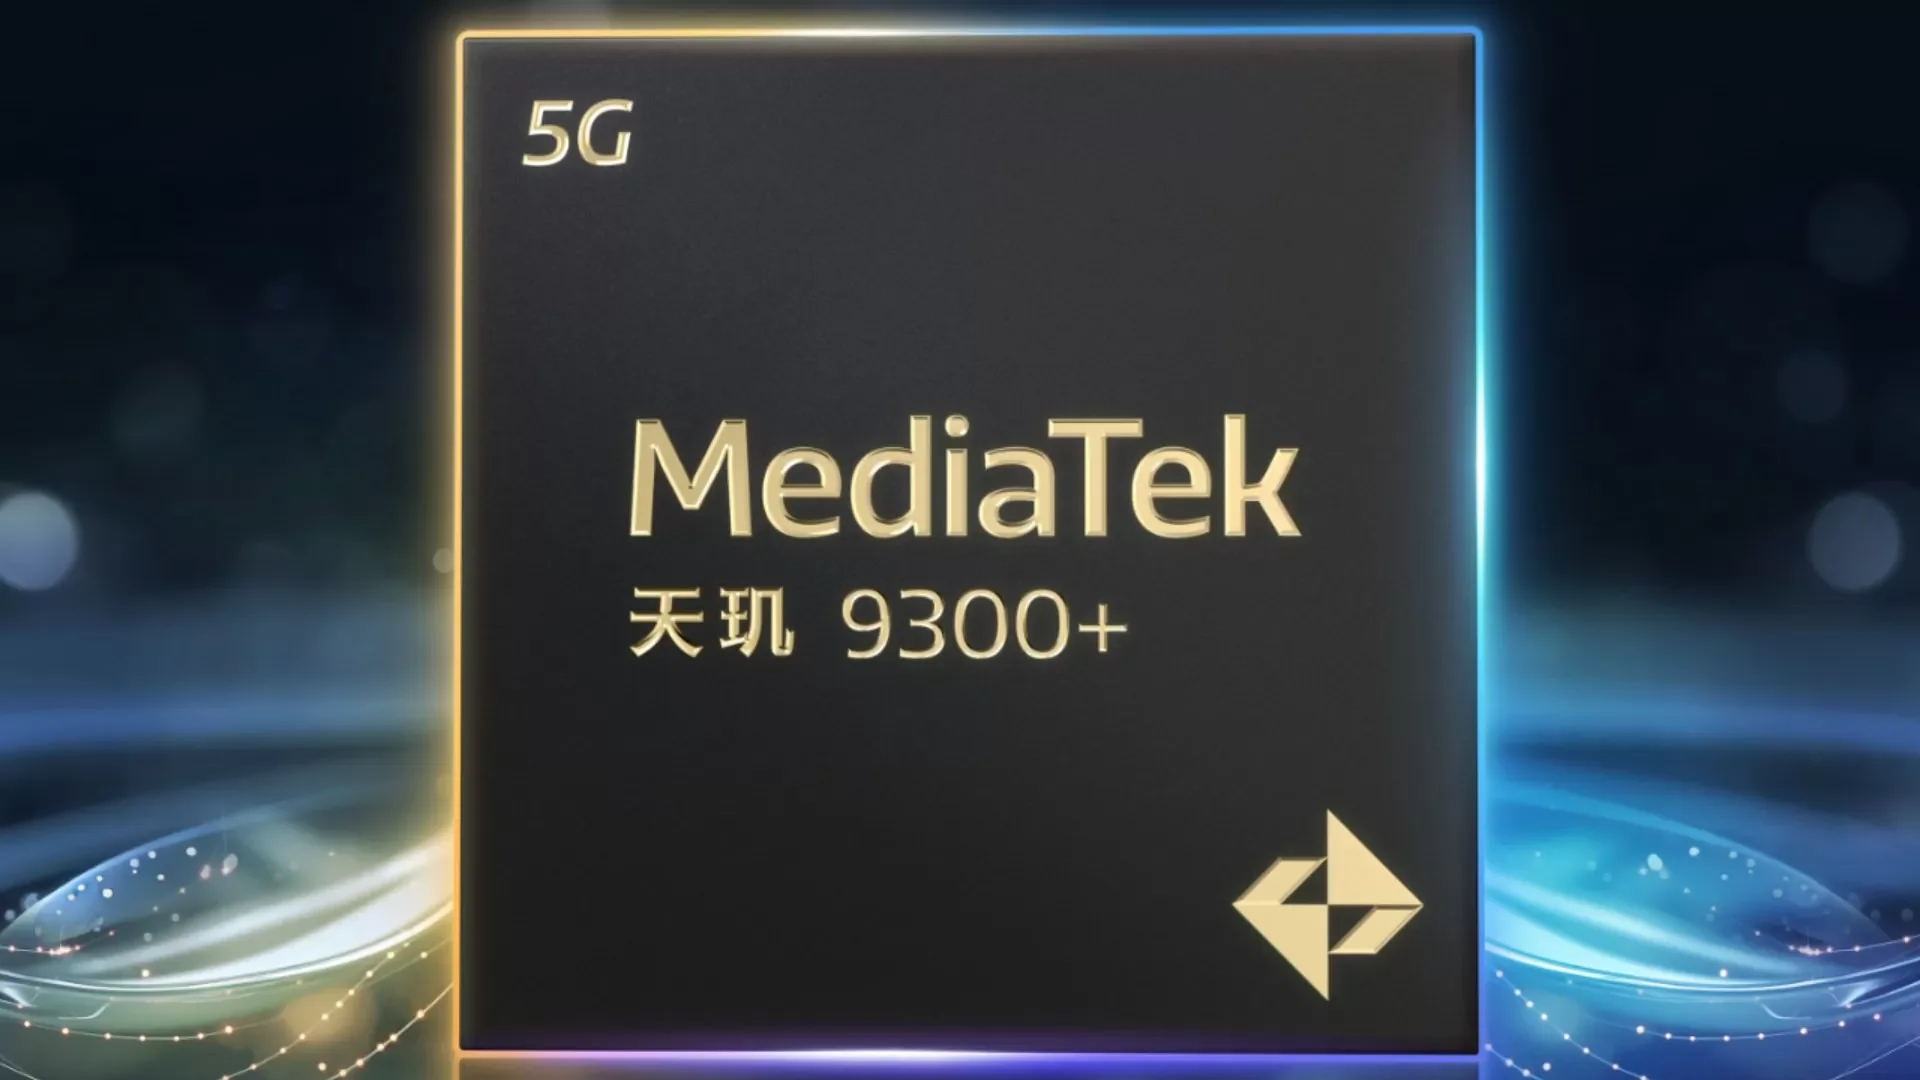 Dimensity 9300+, il nuovo chipset di casa MediaTek sarà il re indiscusso dell'AI. La presentazione è prevista per martedì 7 maggio